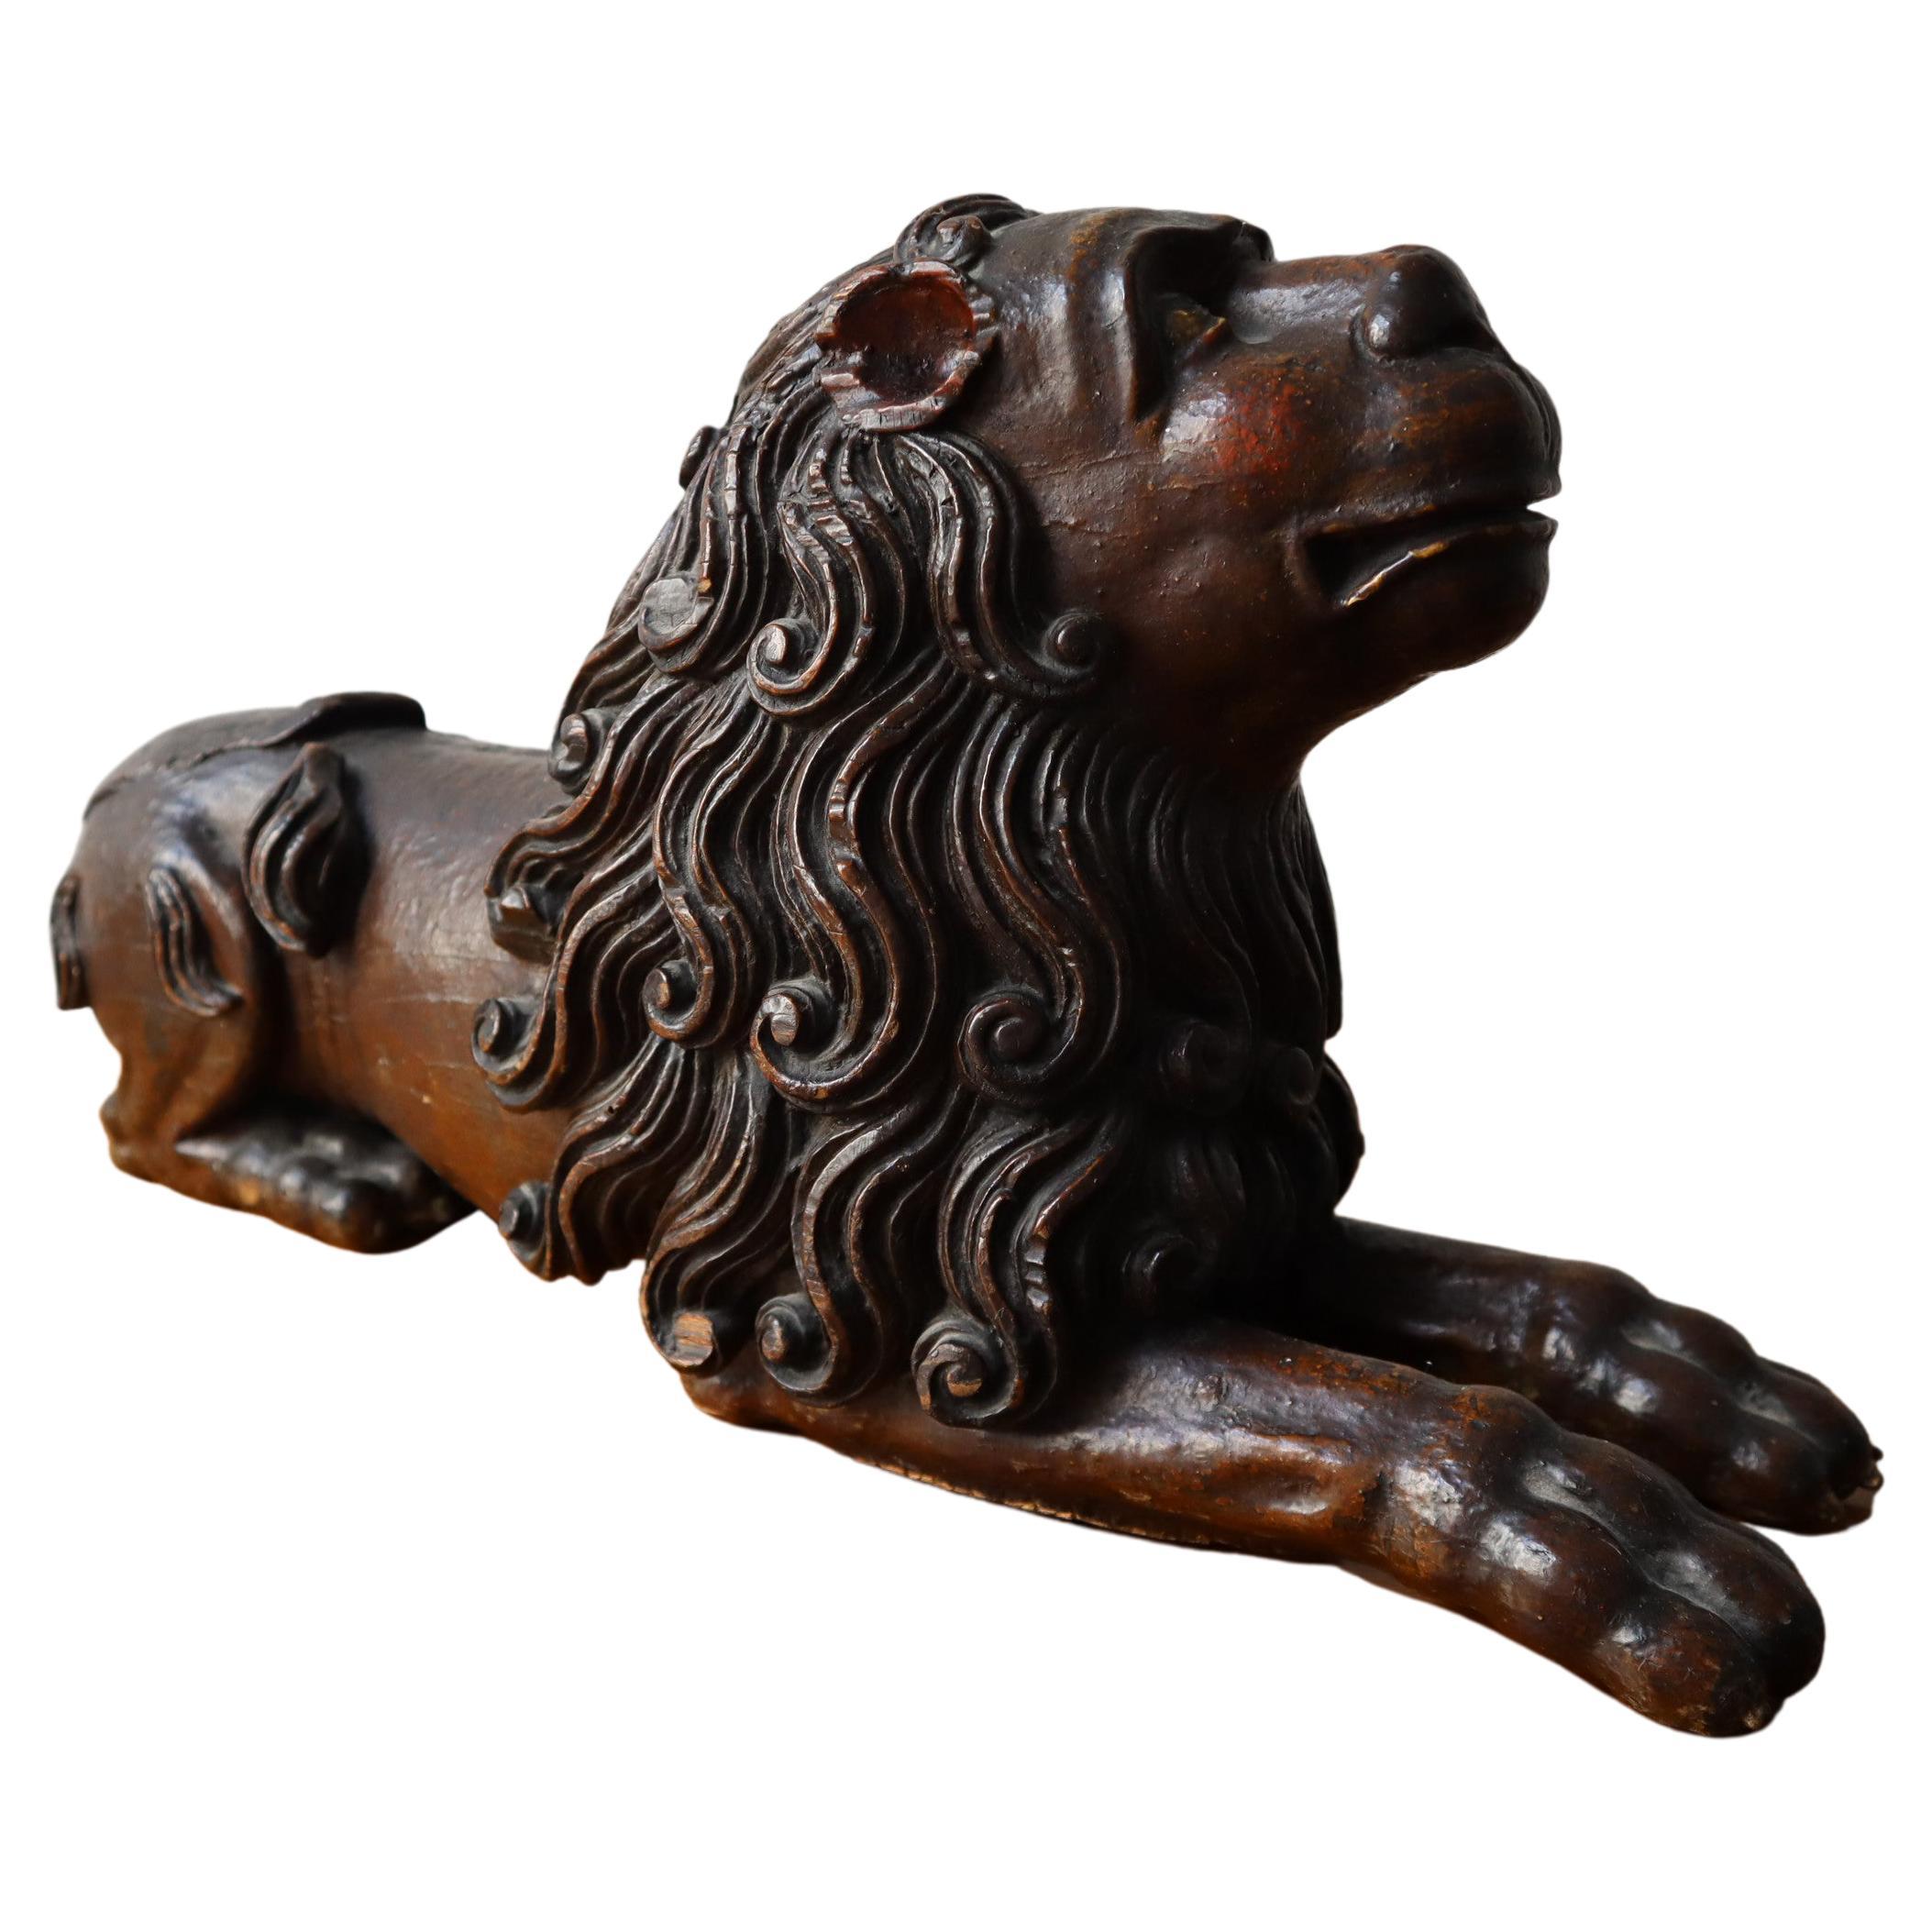 Ancienne sculpture baroque italienne ou autrichienne de lion sculptée à la main